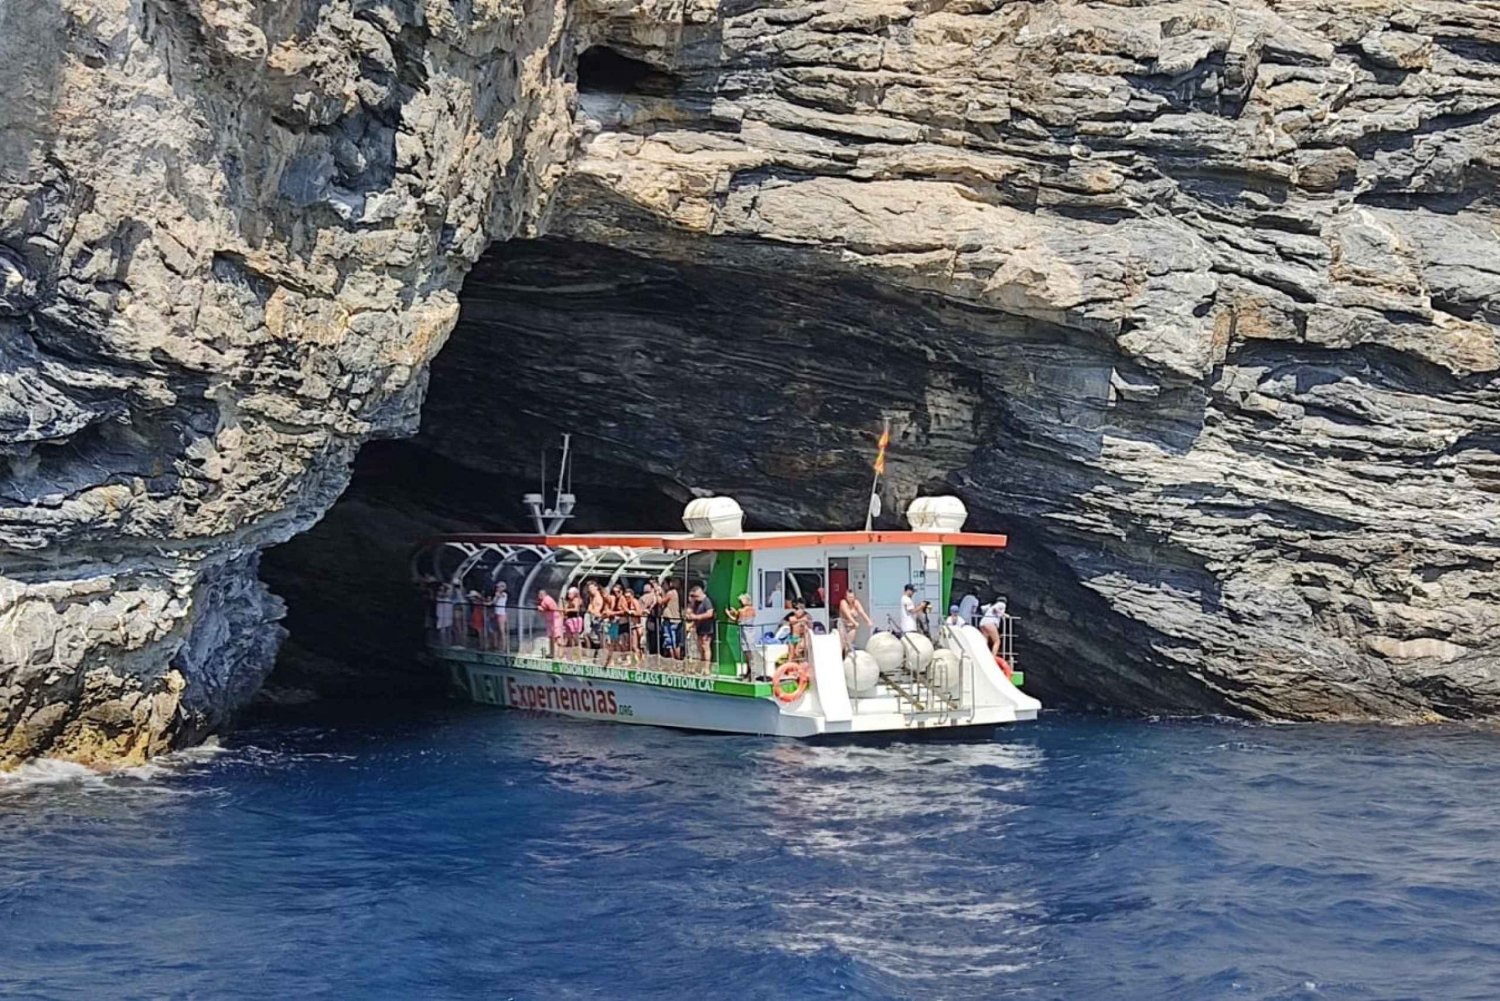 From Roses: Wycieczka łodzią ze szklanym dnem na przylądek Norfeu i jaskinia Tamariu